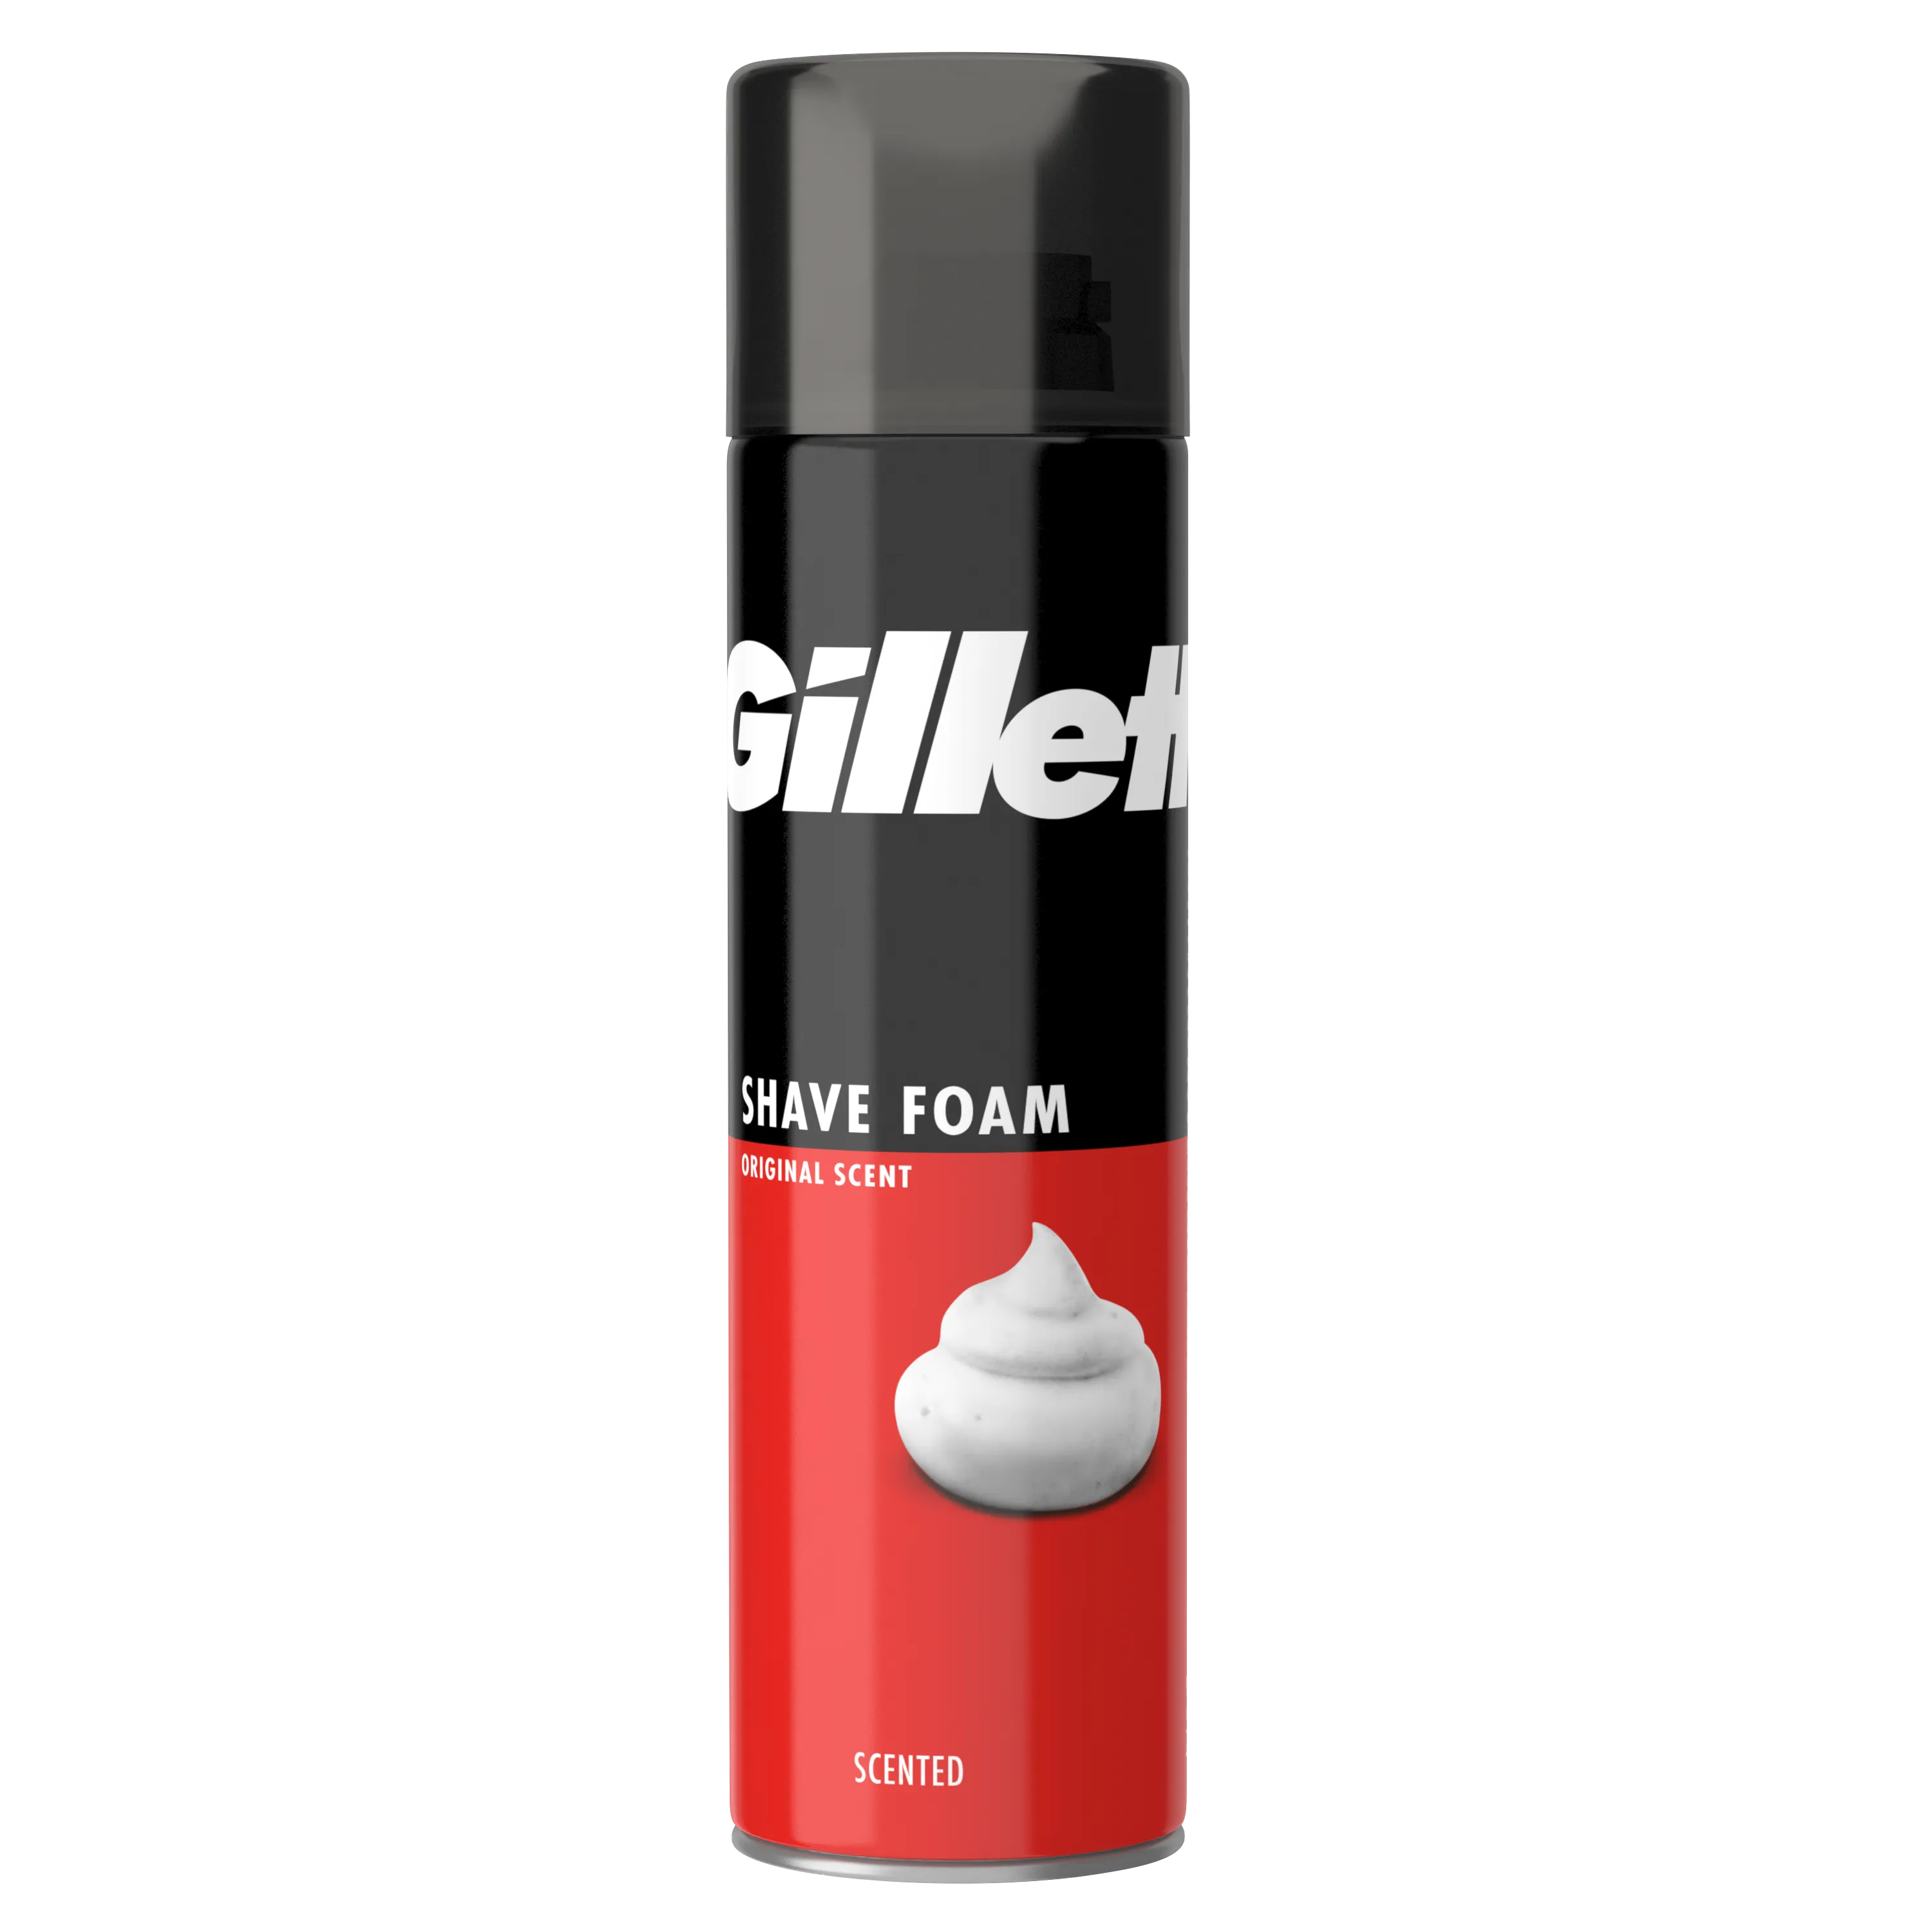 Gillette Regular pianka do golenia, 200 ml